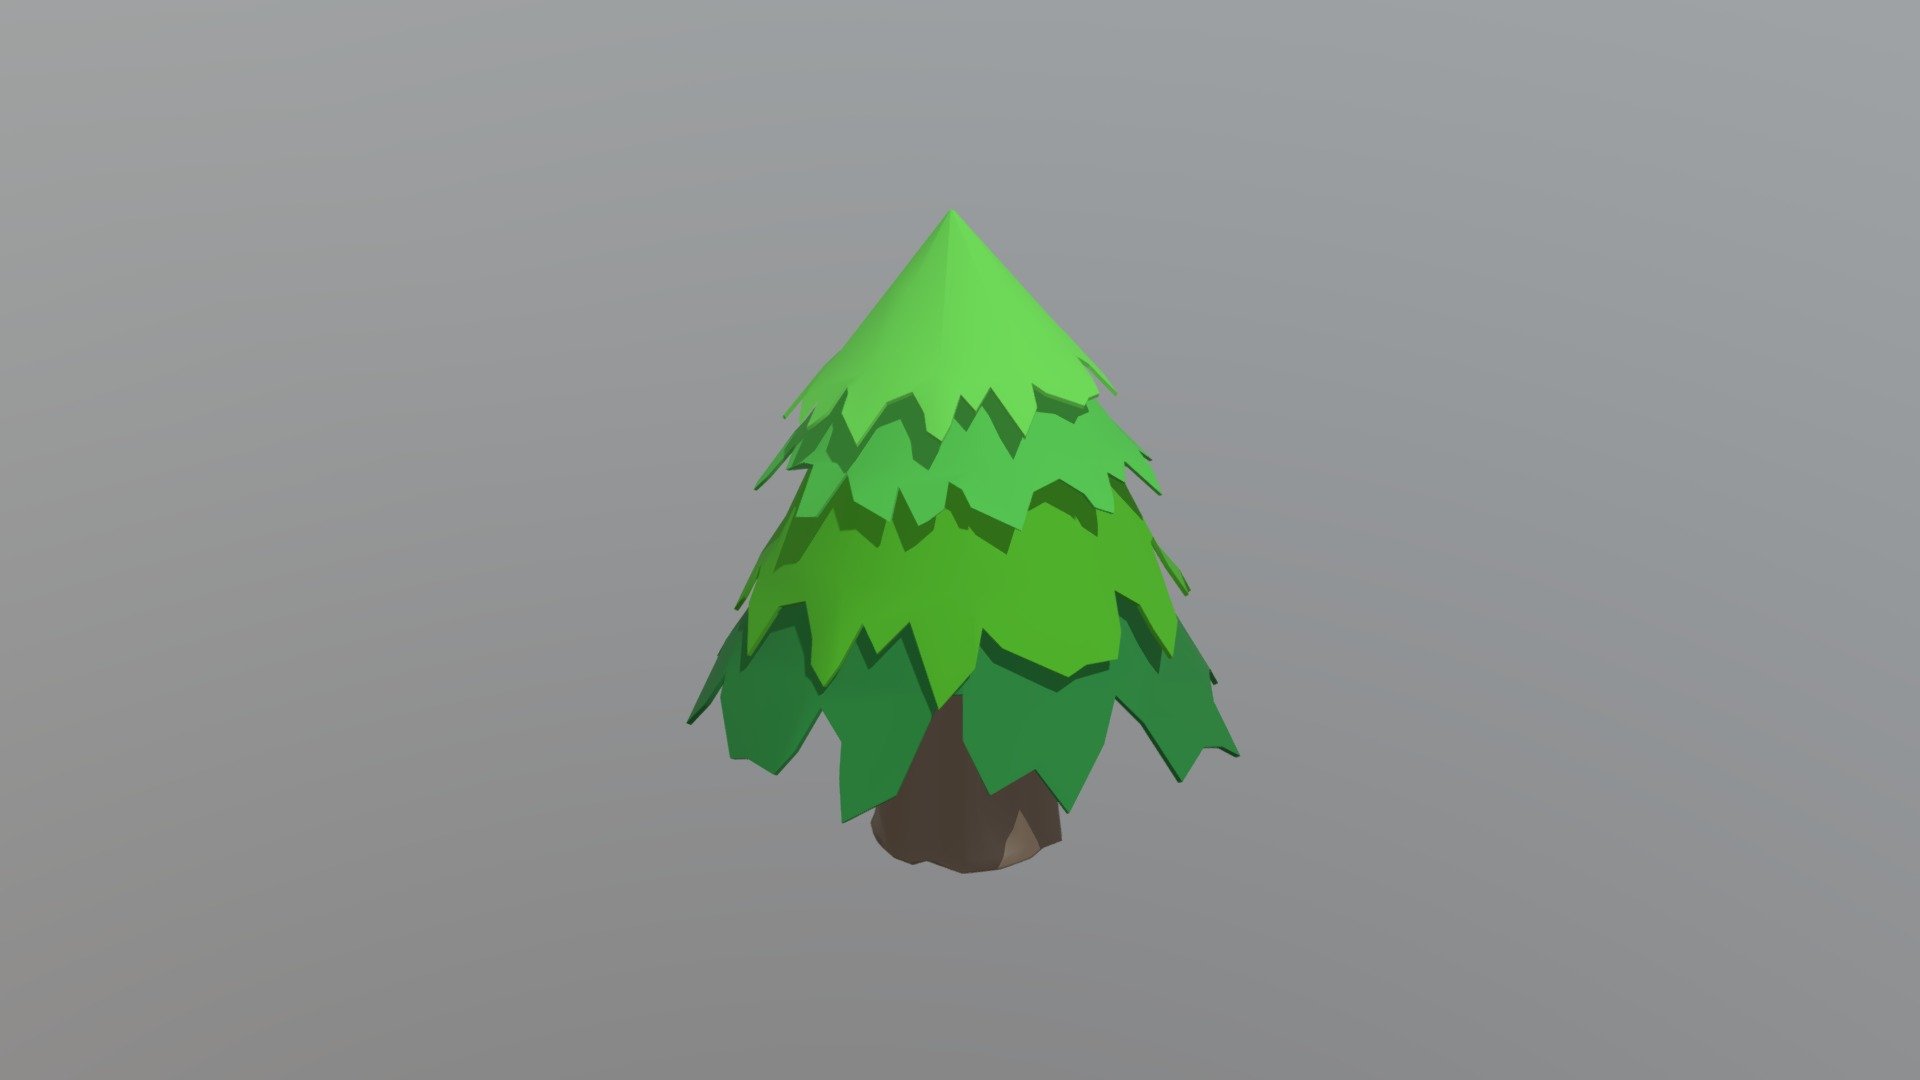 Low-Poly Stylized Pine Tree